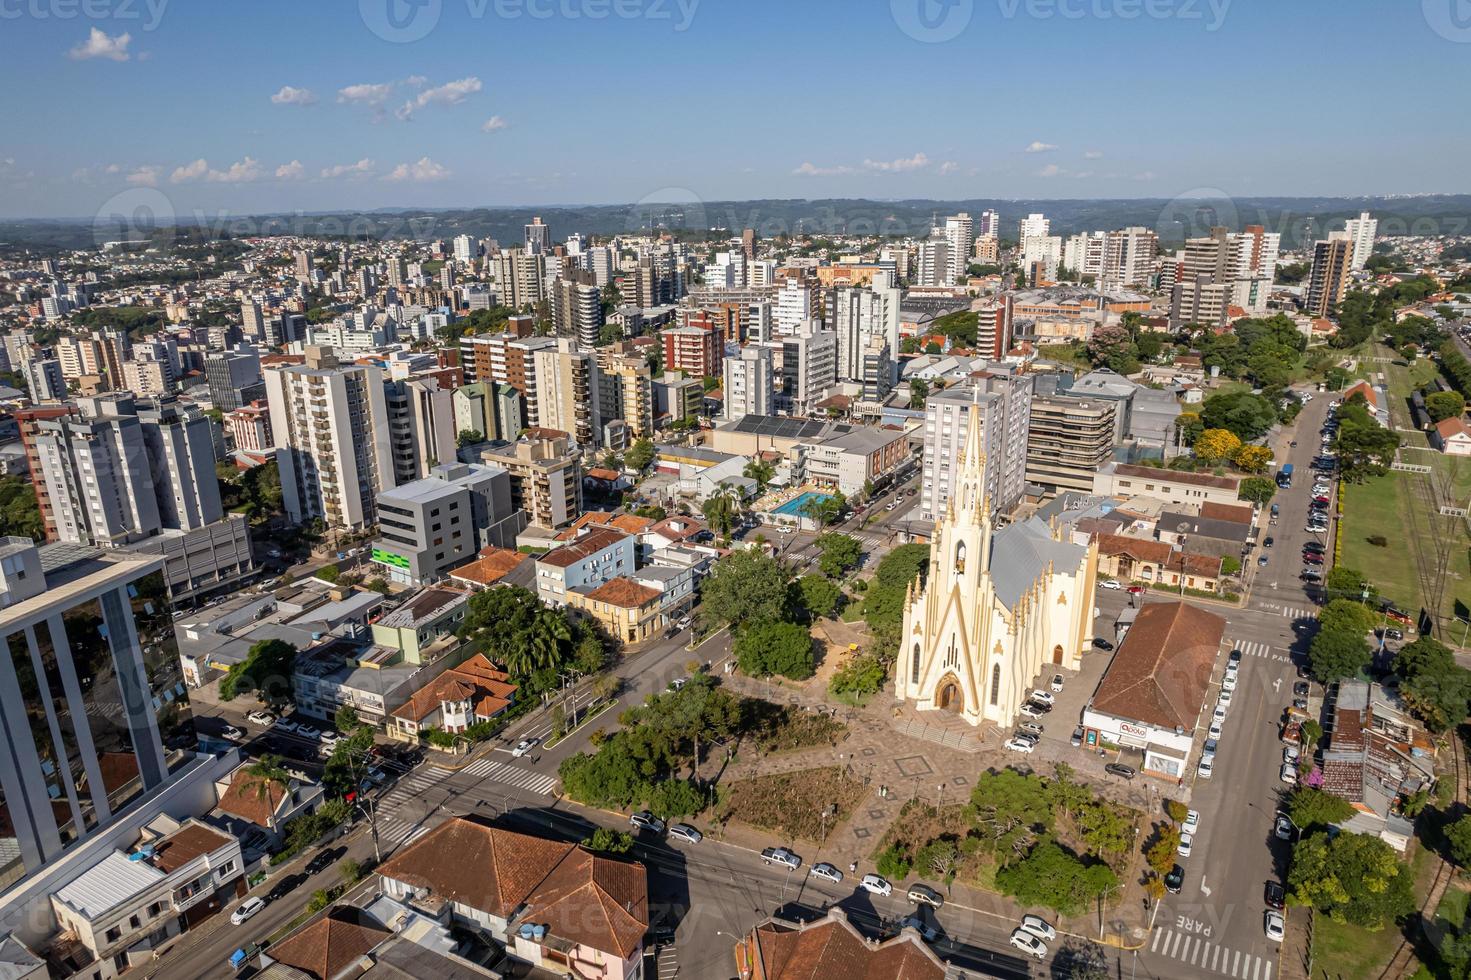 vue aérienne de bento goncalves, rio grande do sul, brésil. célèbre ville touristique du sud du brésil. photo